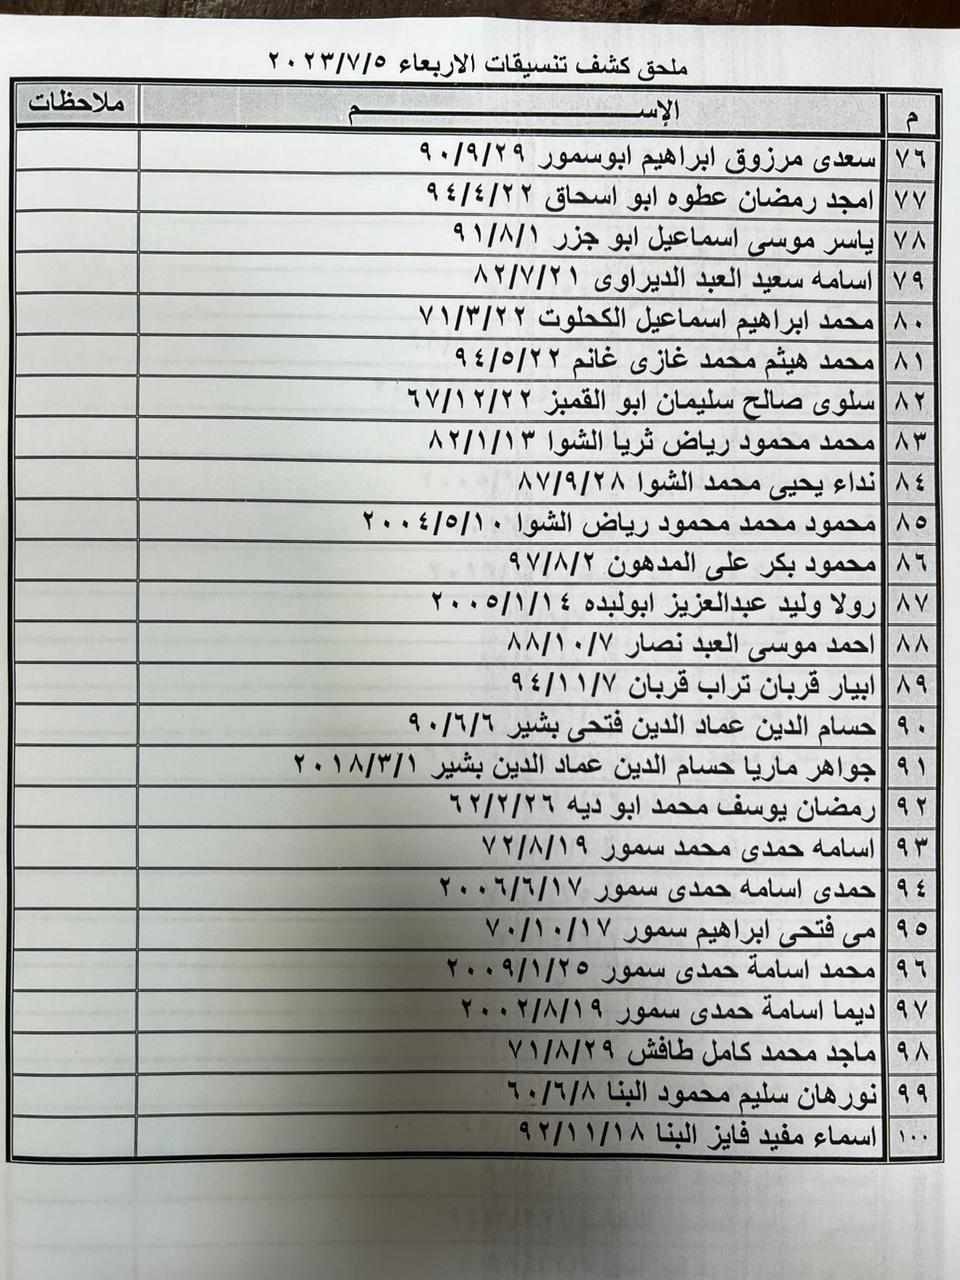 بالأسماء: ملحق كشف "التنسيقات المصرية" للسفر عبر معبر رفح الأربعاء 5 يوليو 2023